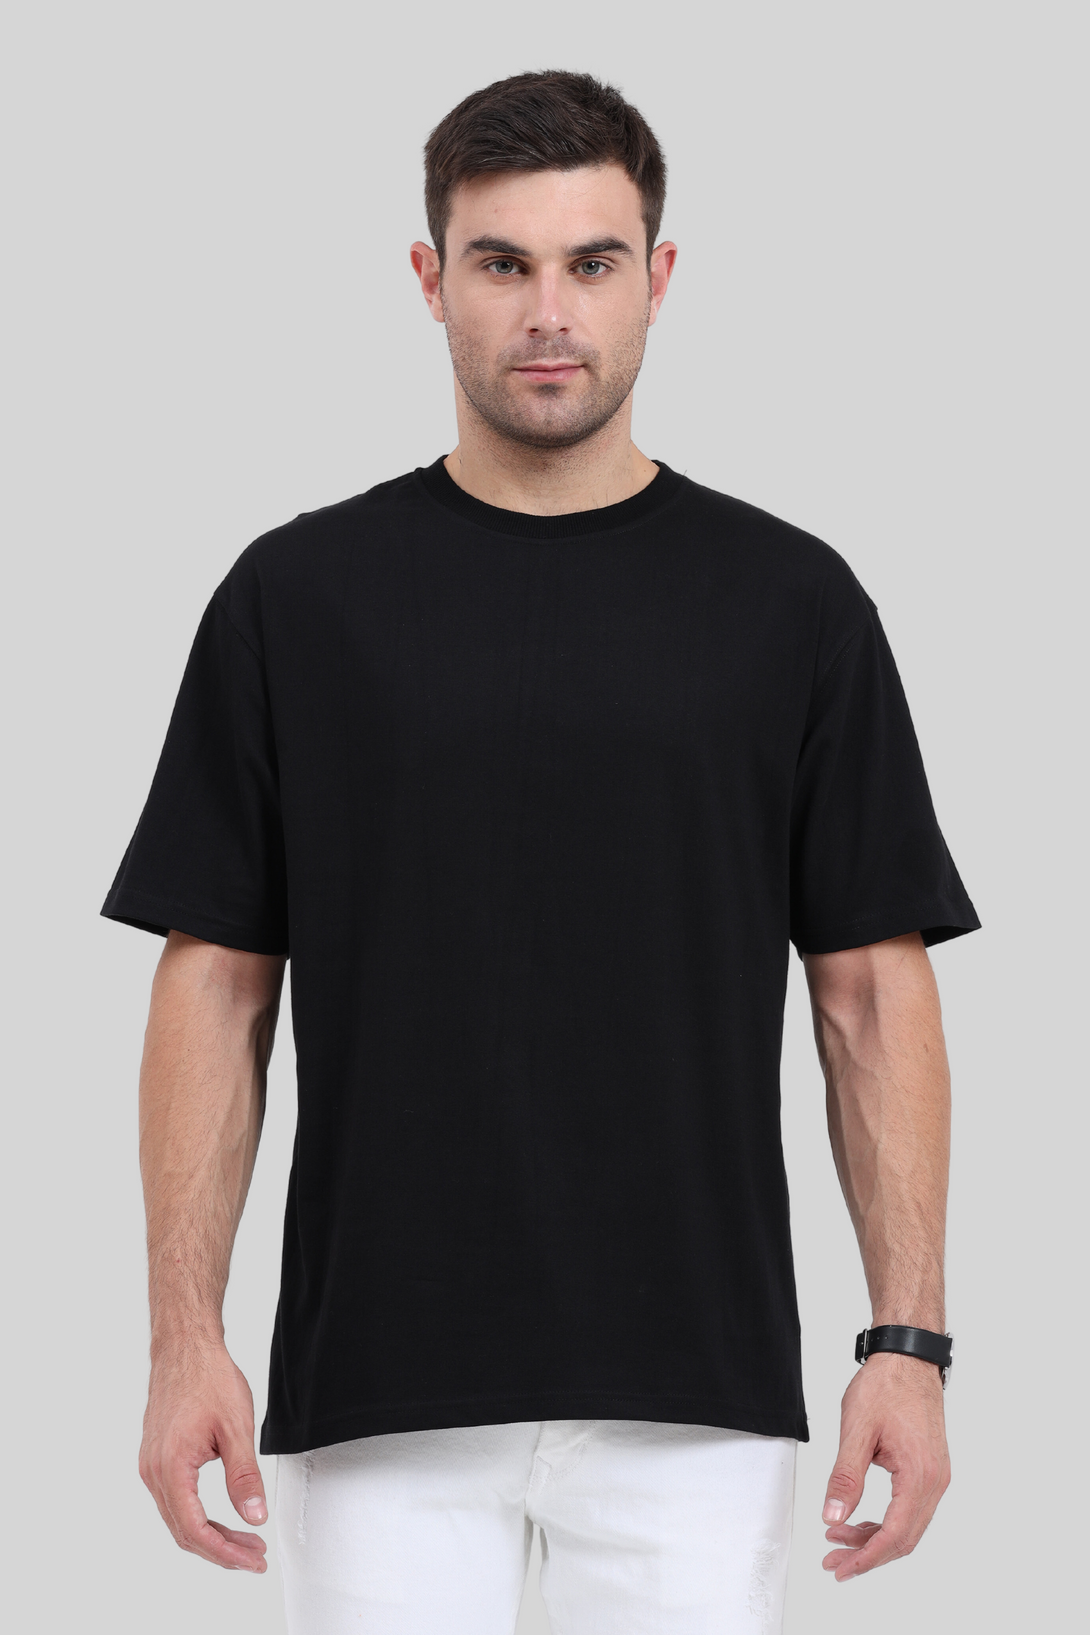 Black Oversized T-Shirt For Men - WowWaves